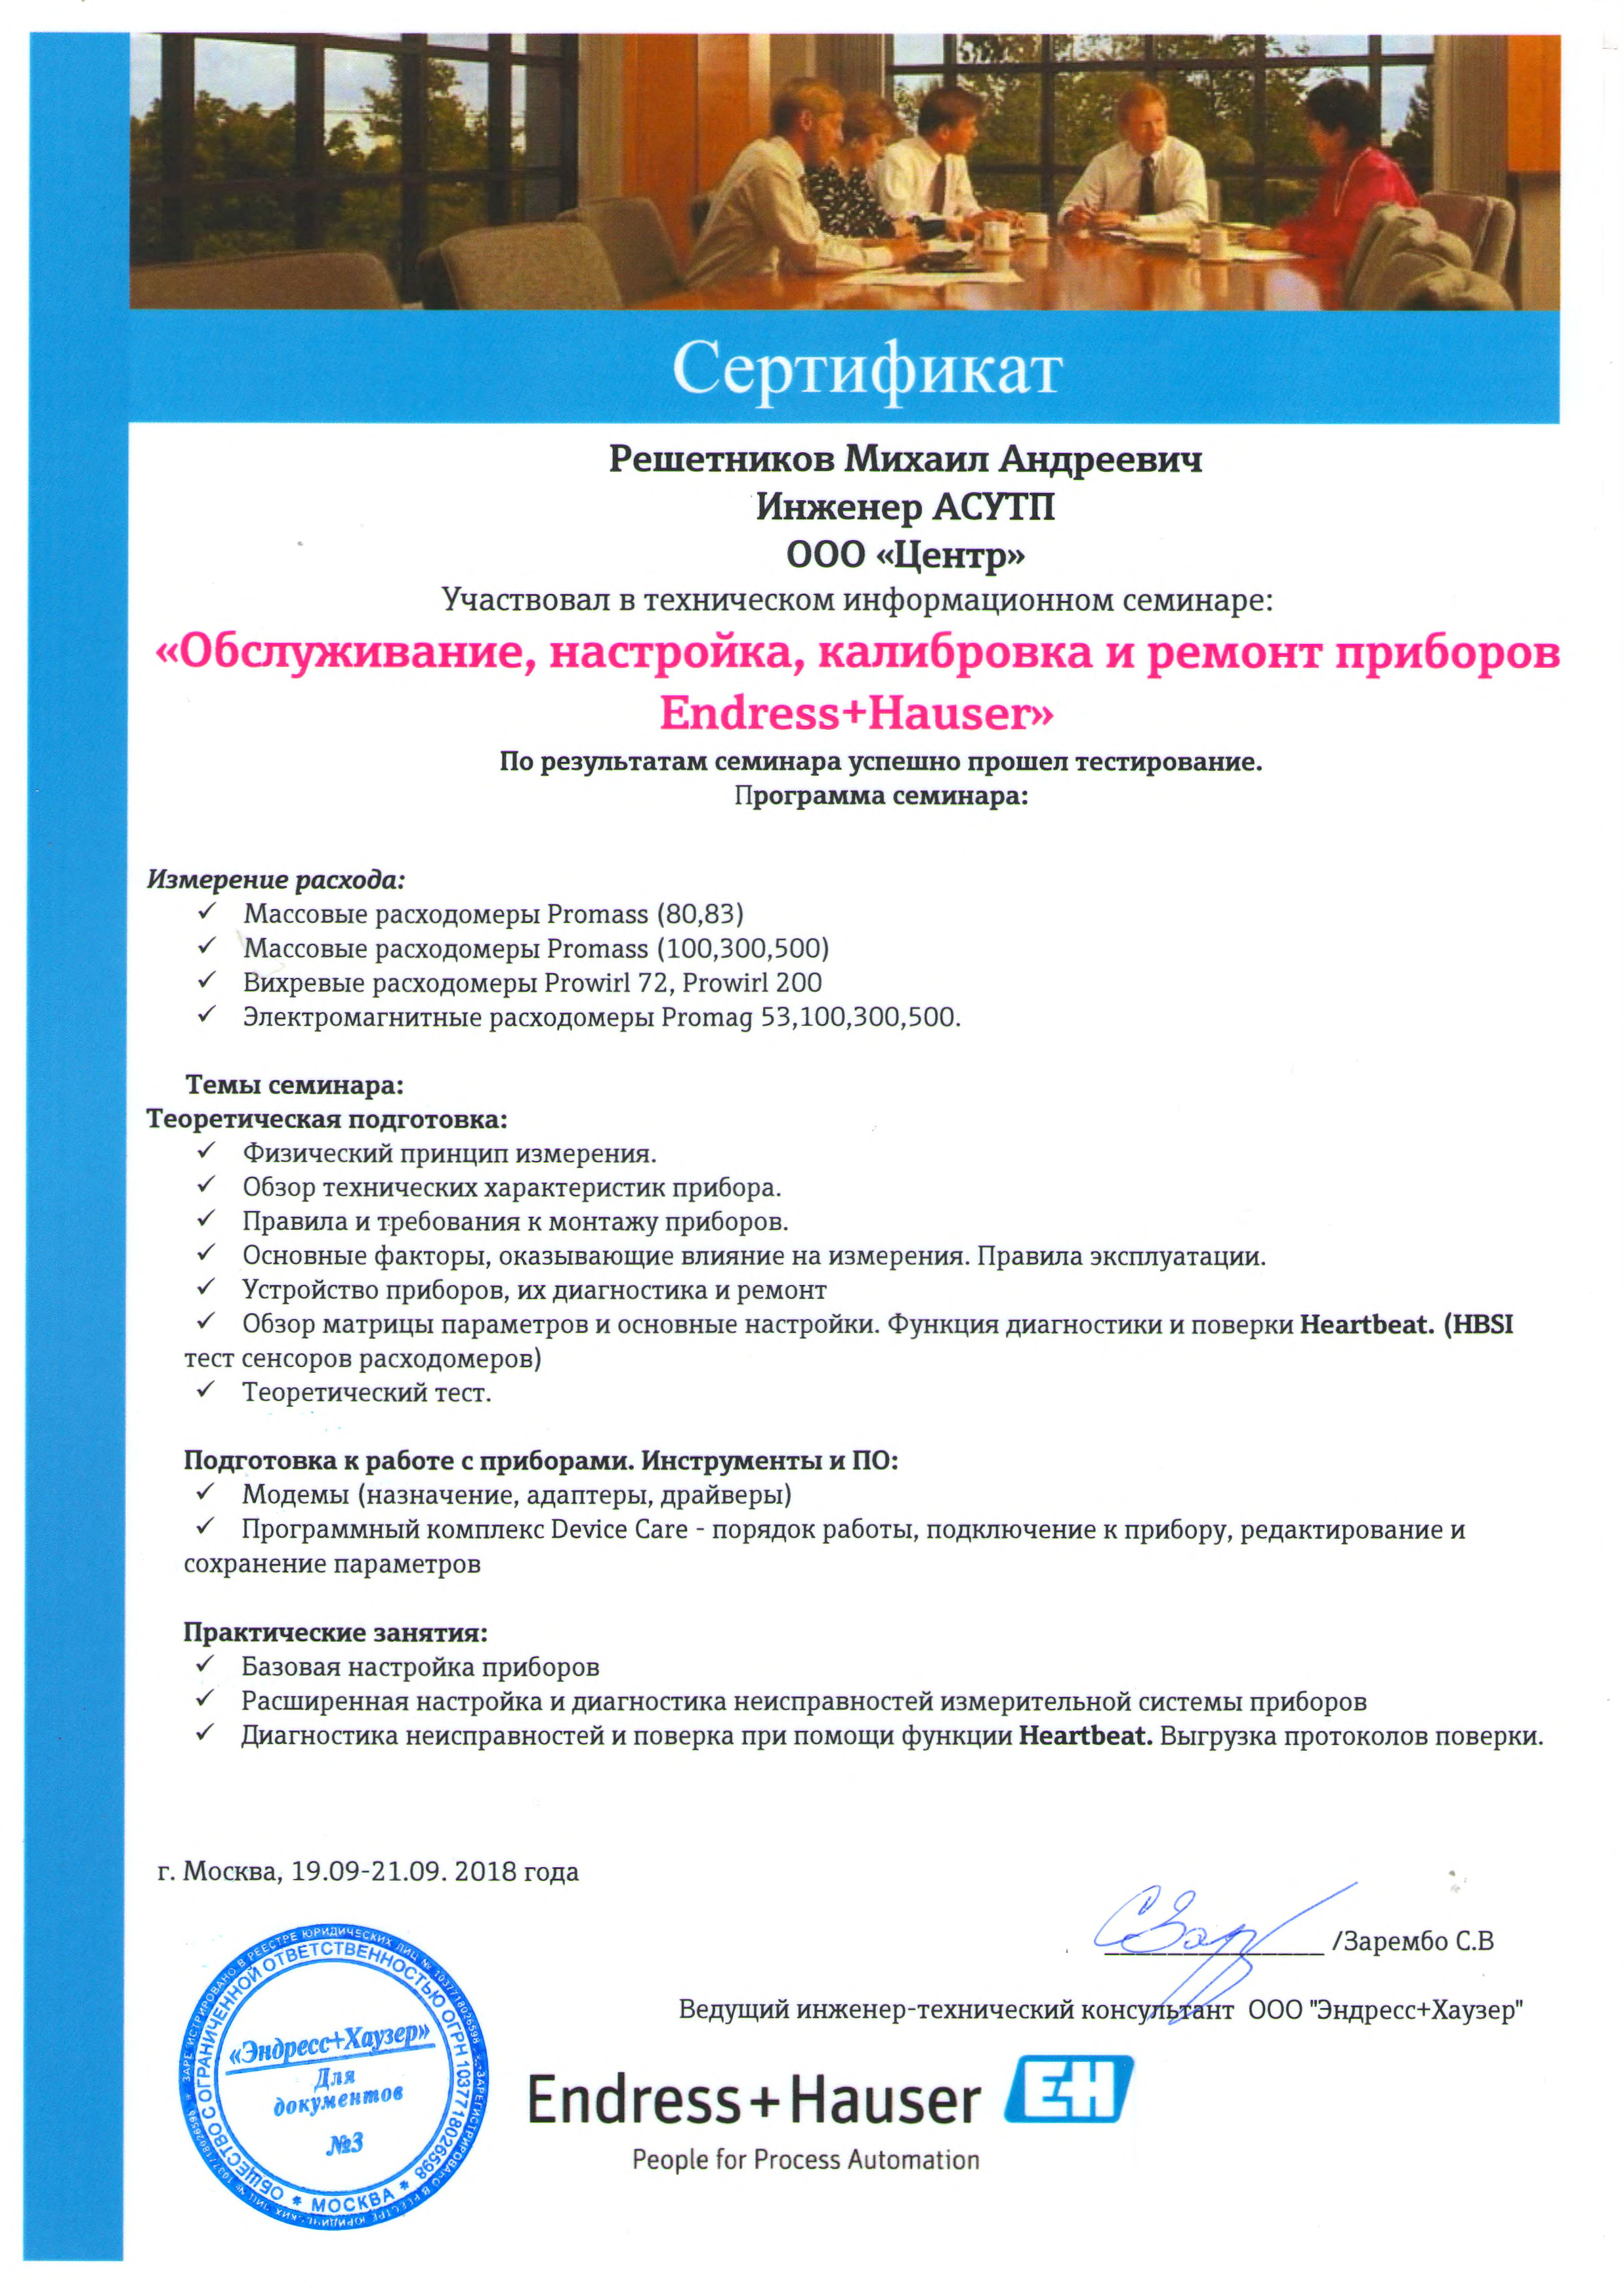 Сертификат Endress+Hauser Обслуживание,настройка,калибровка и ремонт приборов (Решетников М.А.)